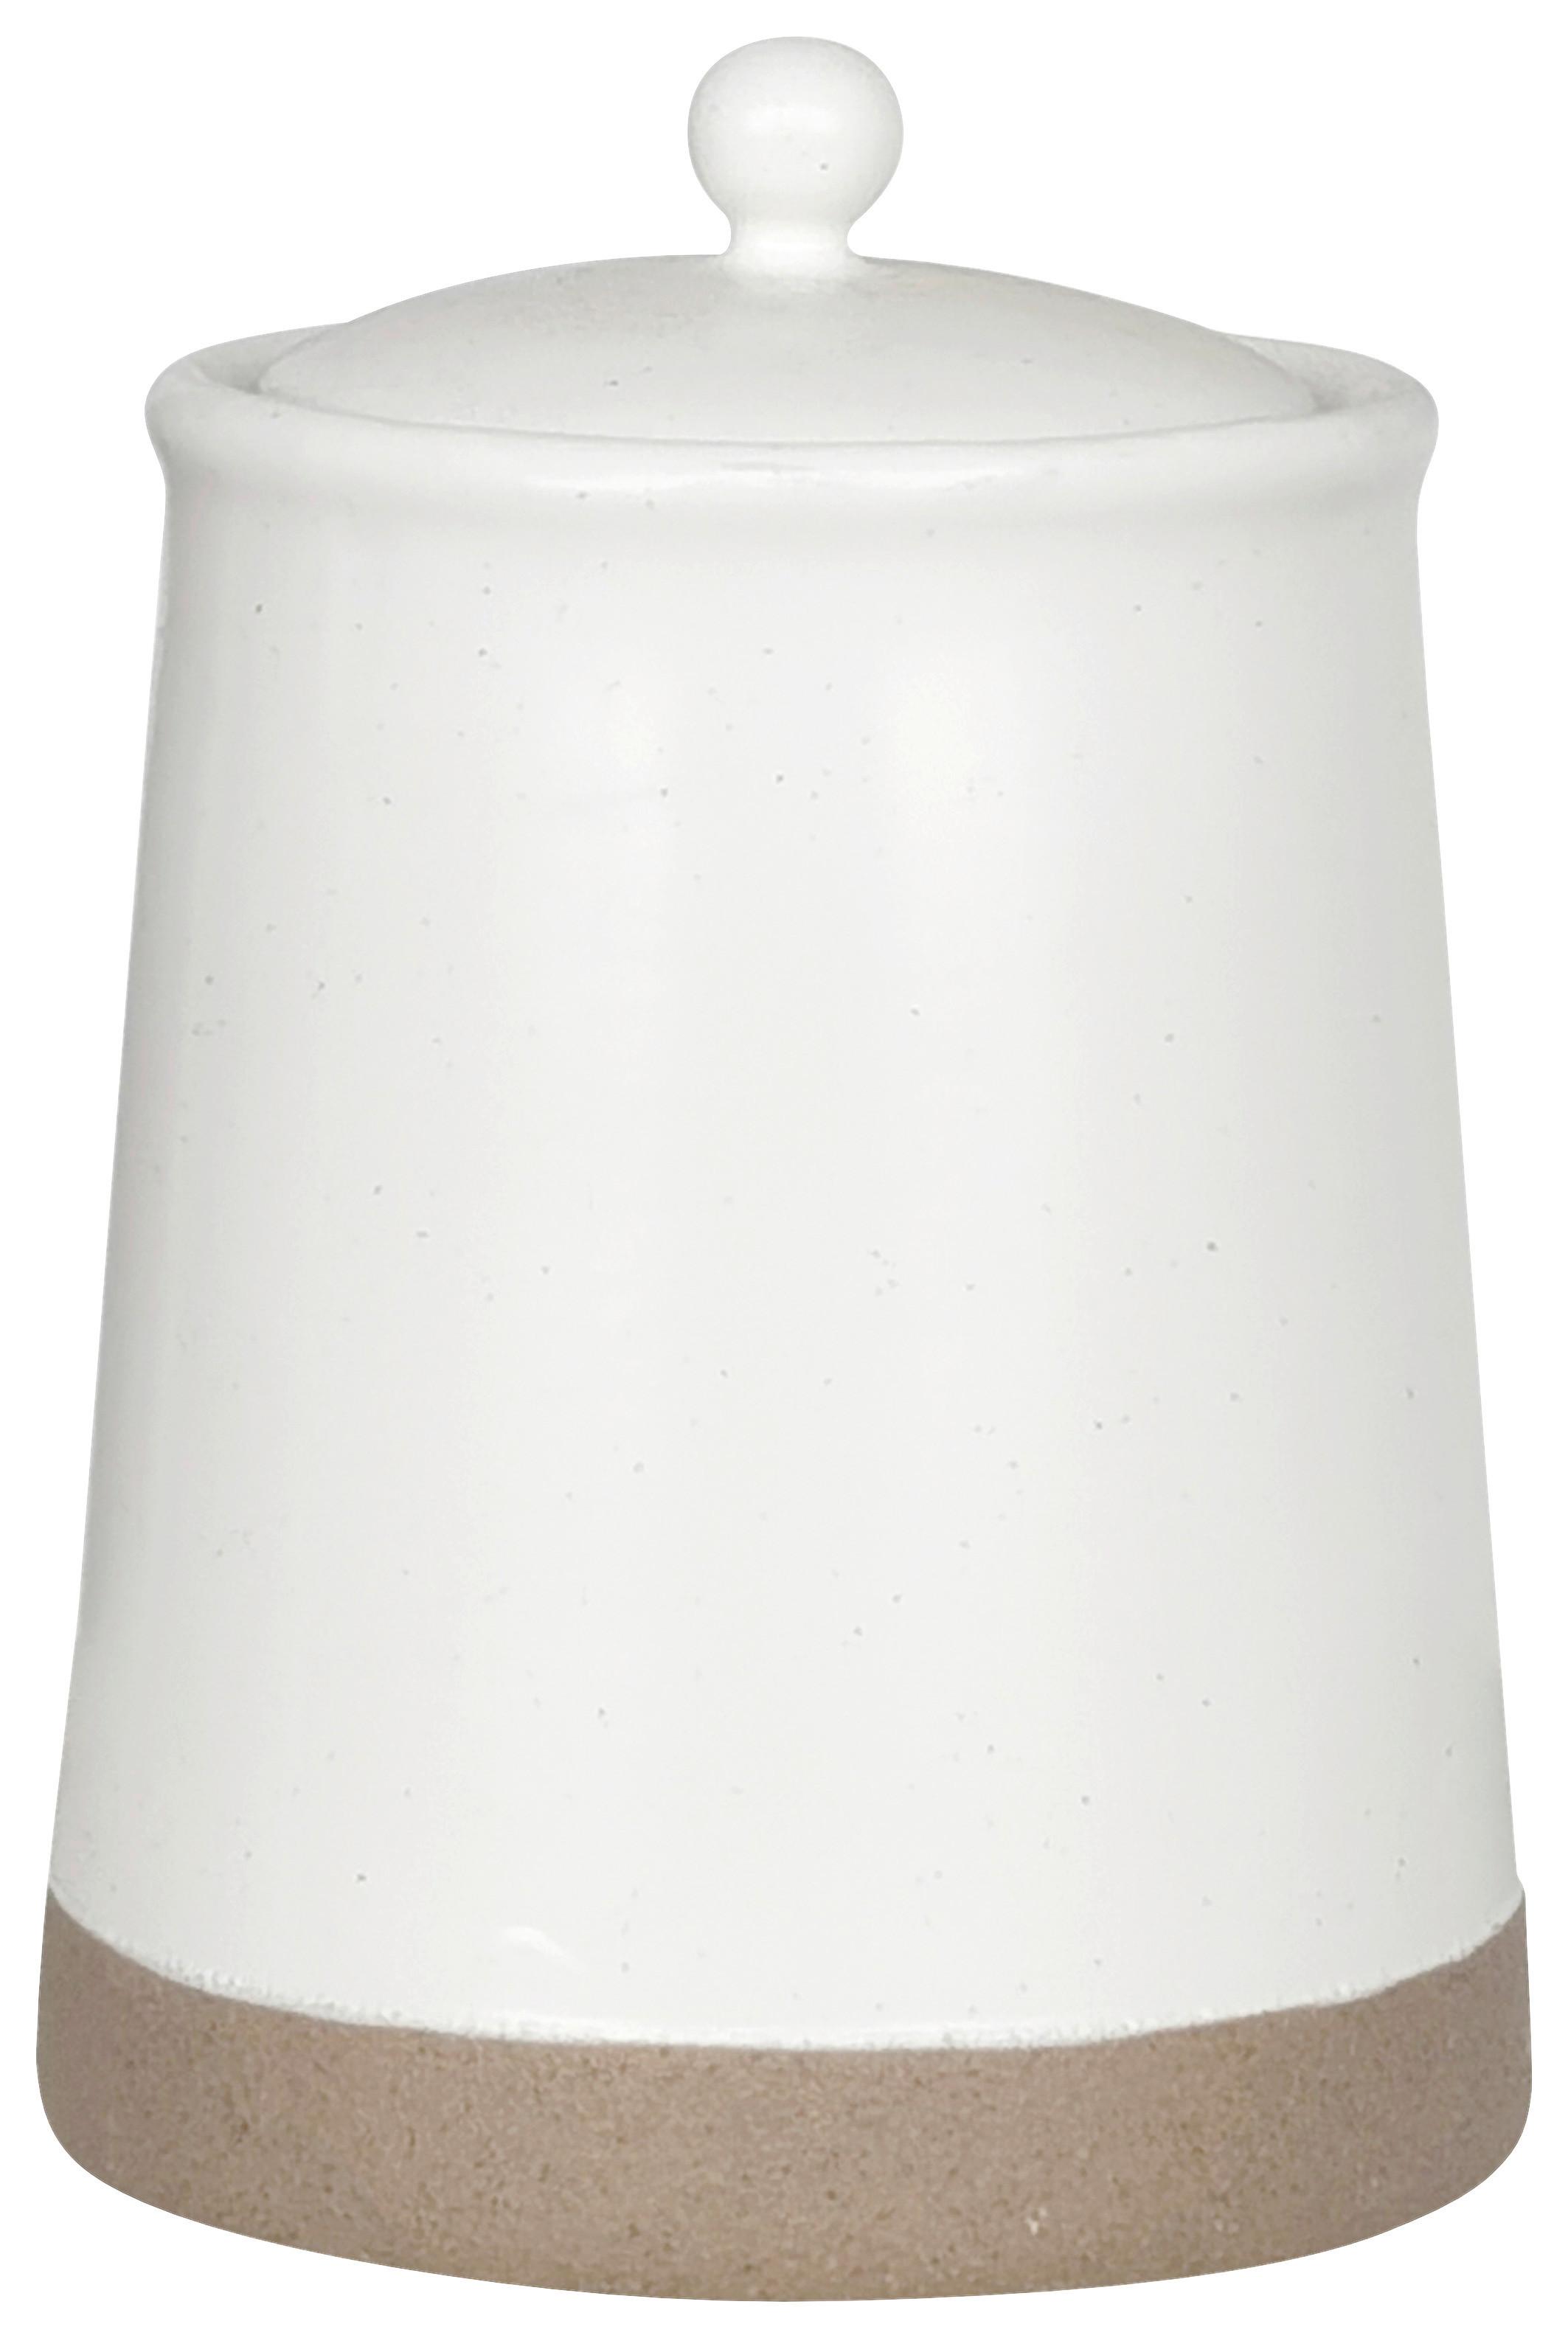 Dóza Na Potraviny Emilia -M - bílá, plast/keramika (12/17cm) - Zandiara